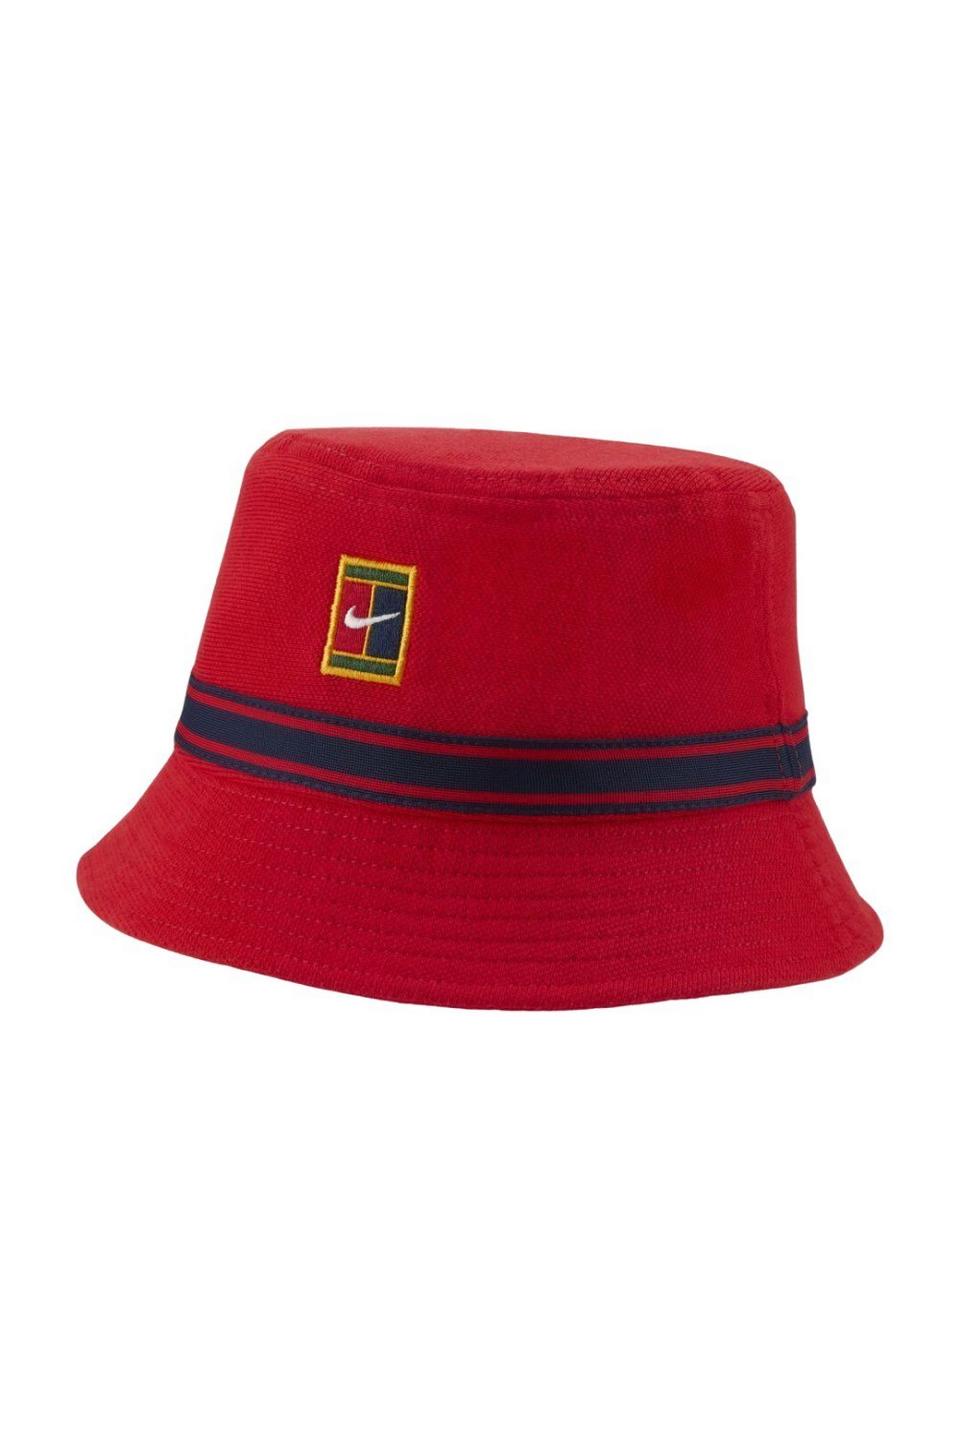 Hats | Heritage Bucket Hat | Nike